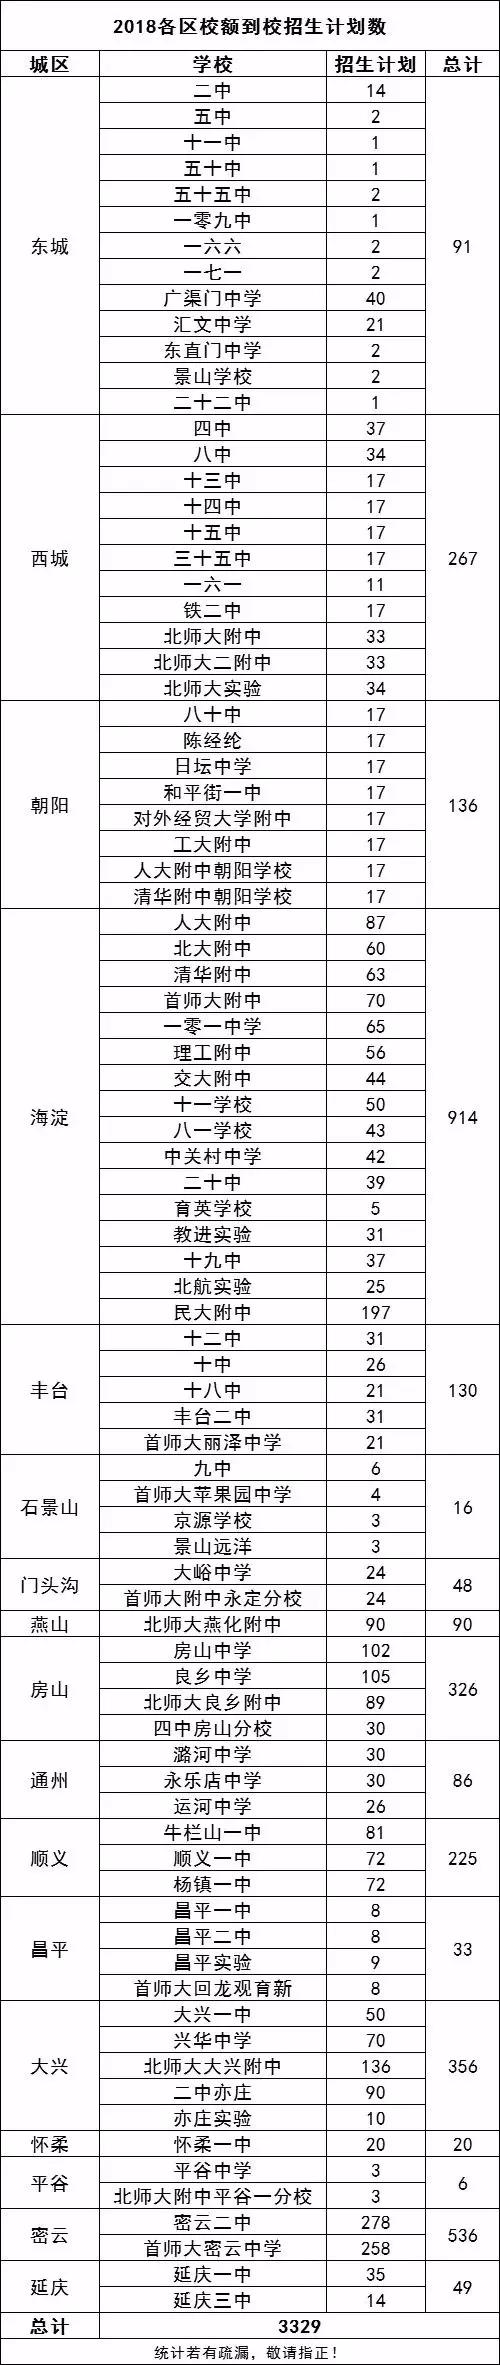 详细解读北京中考名额分配、校额到校和市级统筹政策5